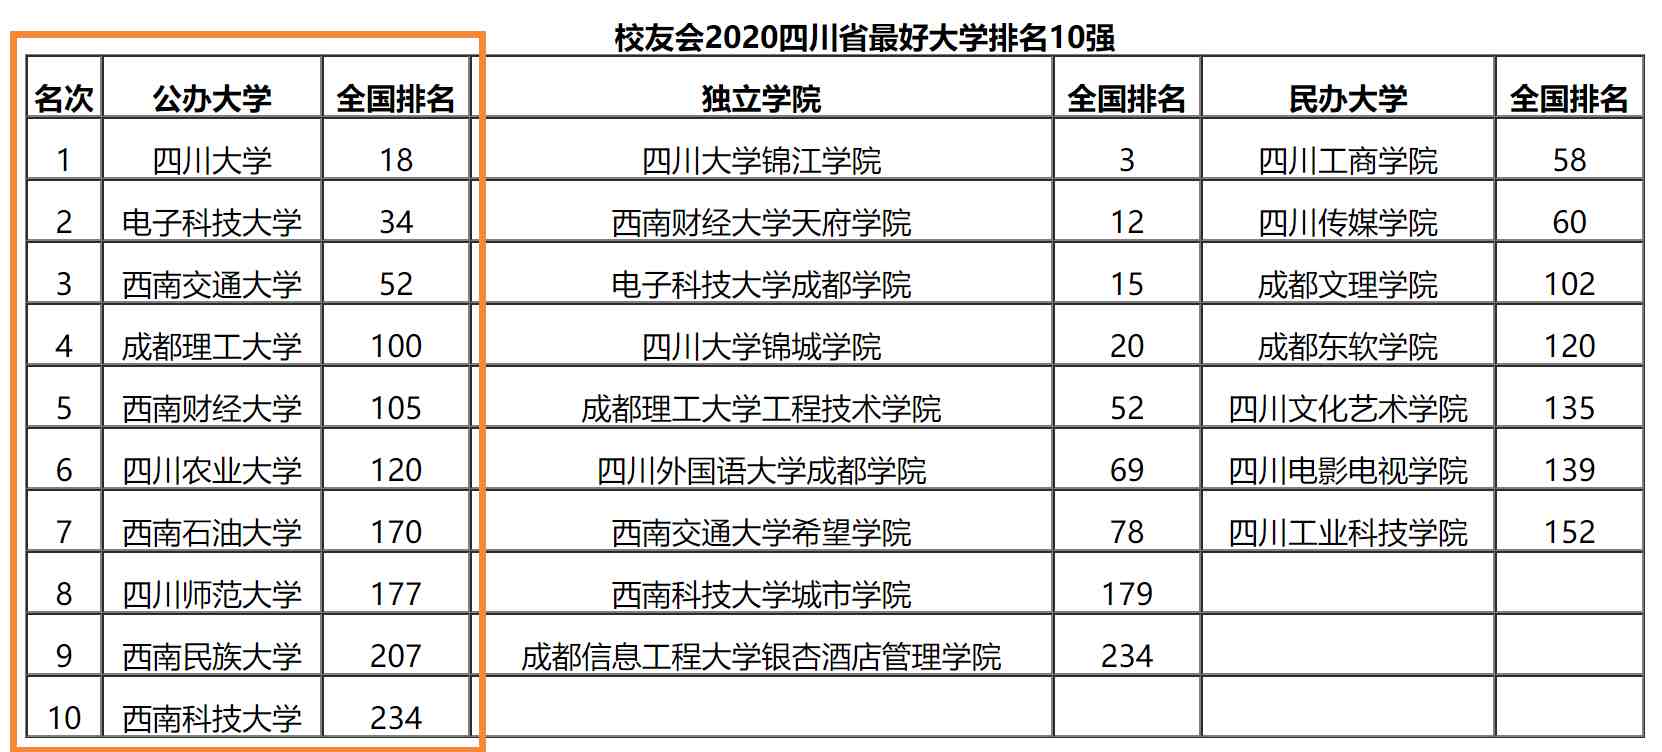 四川高校最新排名，川大领跑，成都理工大学超过西财上升2位